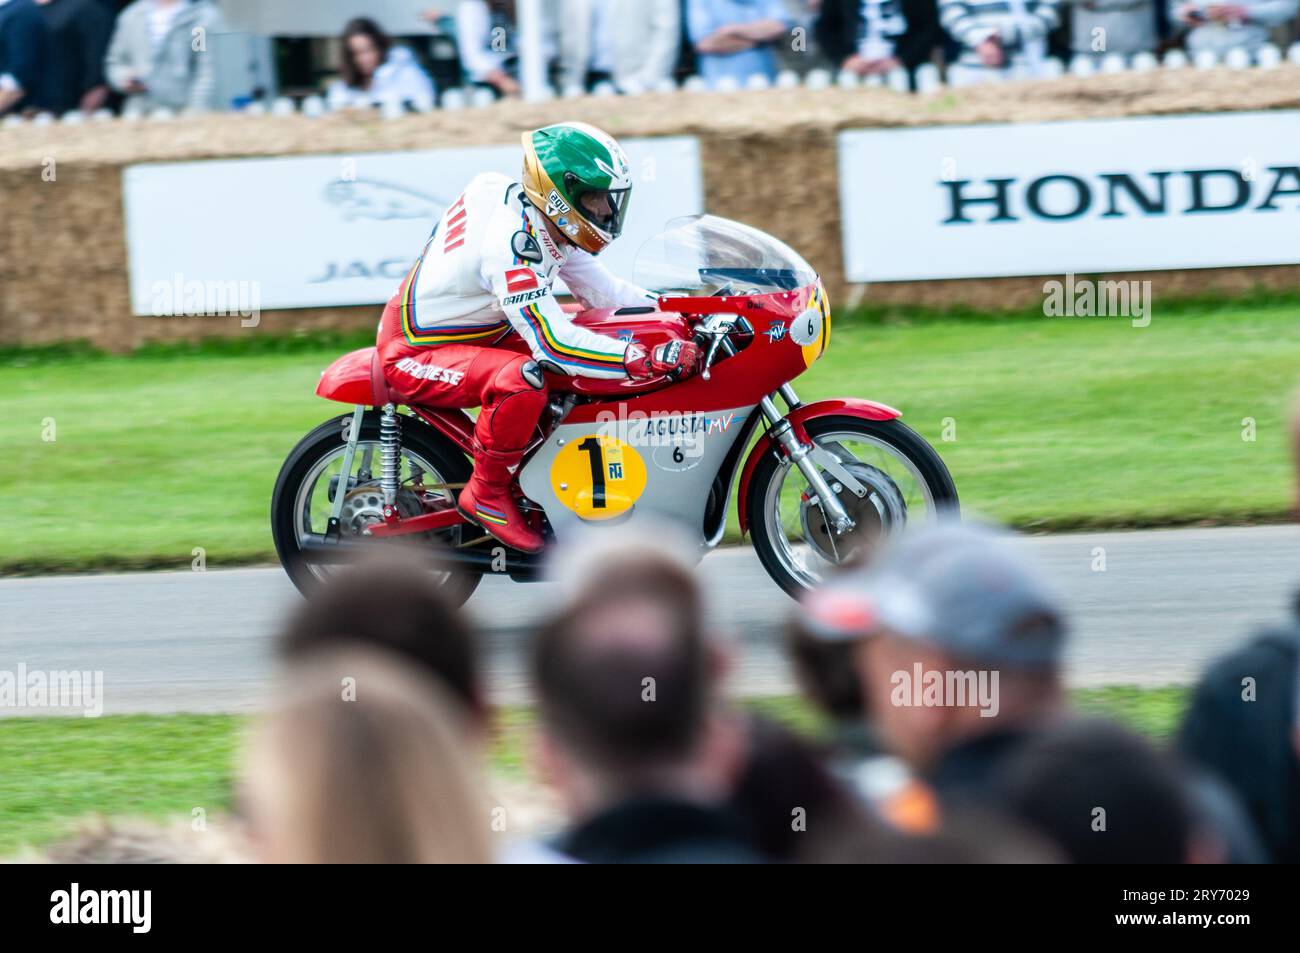 MV Agusta 500 ccm drei Rennen den Berg hinauf beim Goodwood Festival of Speed Motorsport Event, Großbritannien. Historisches Motorrad des Grand Prix World Champion Stockfoto